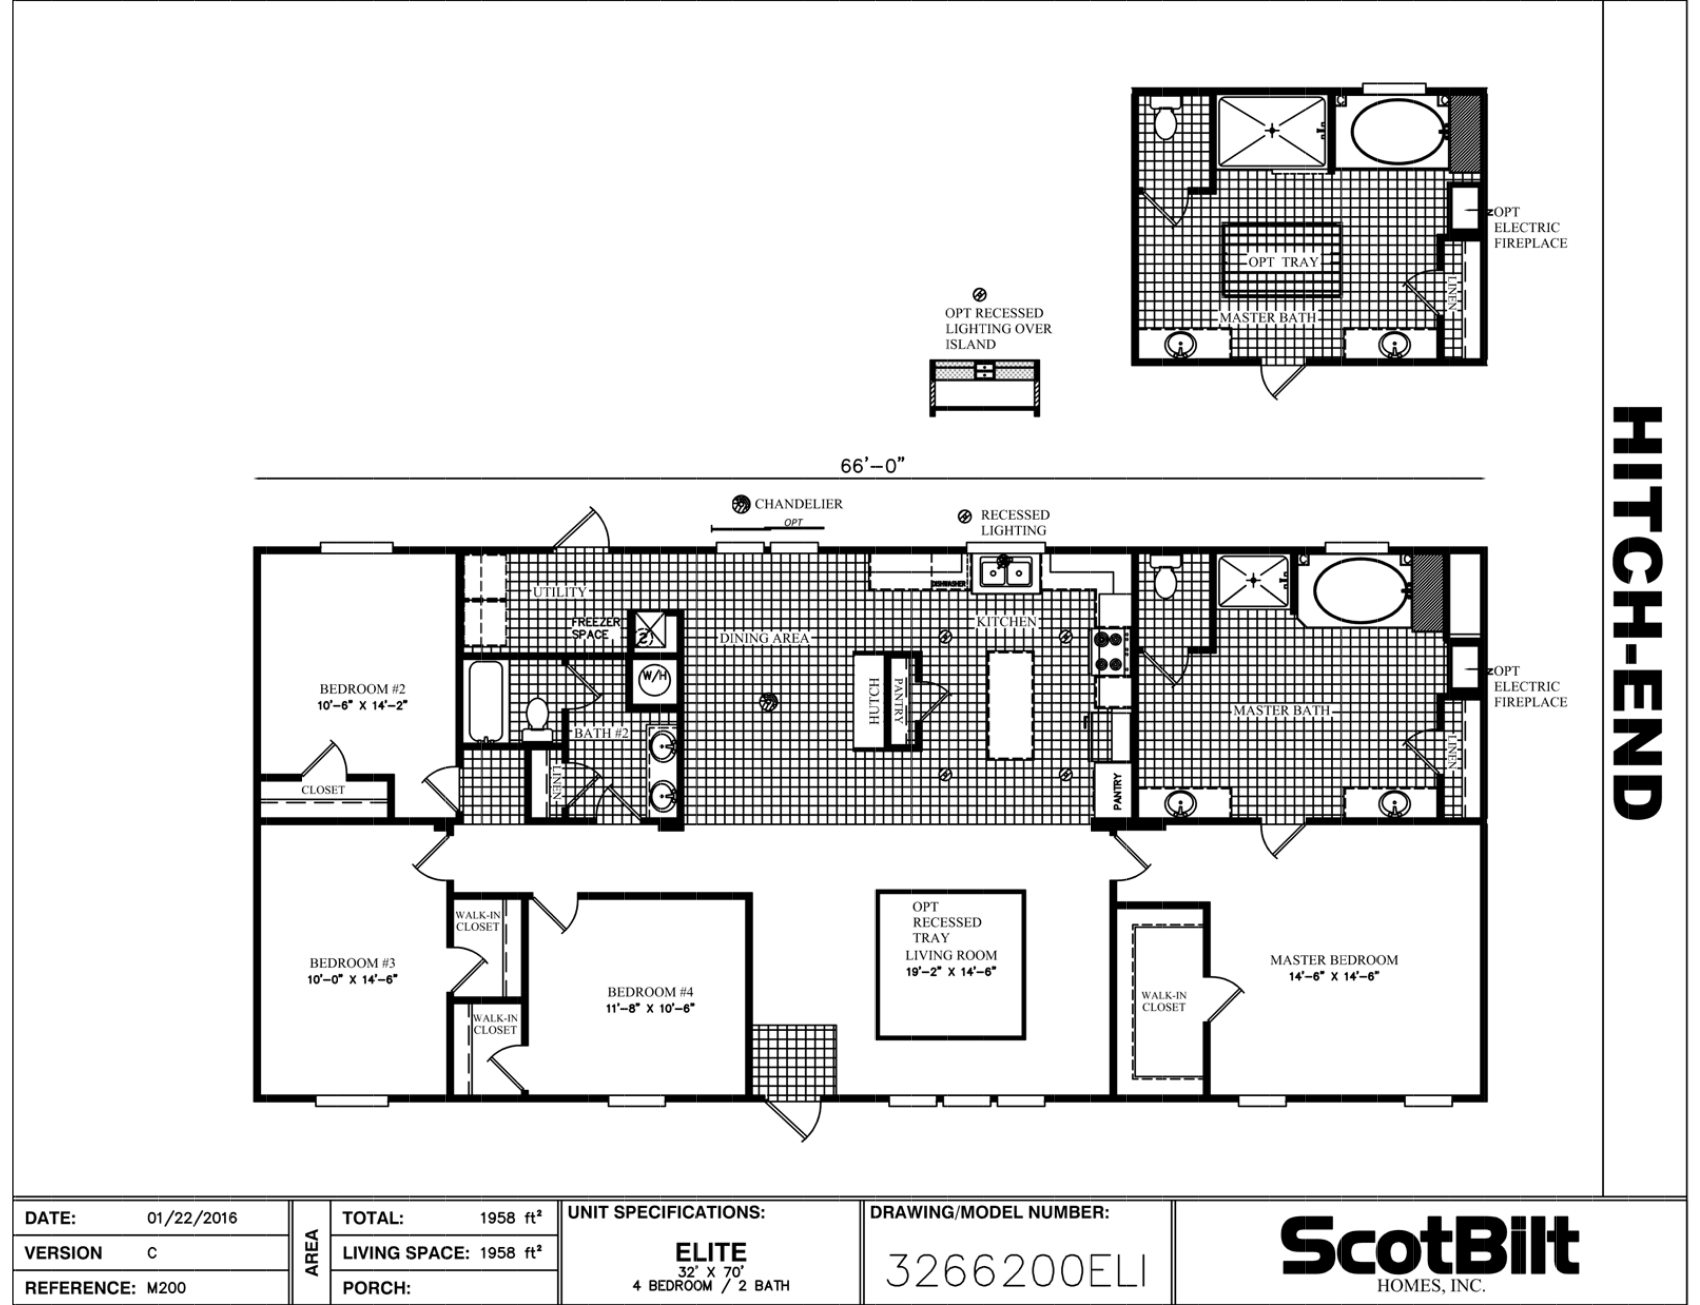 Scotbilt Homes Floor Plans